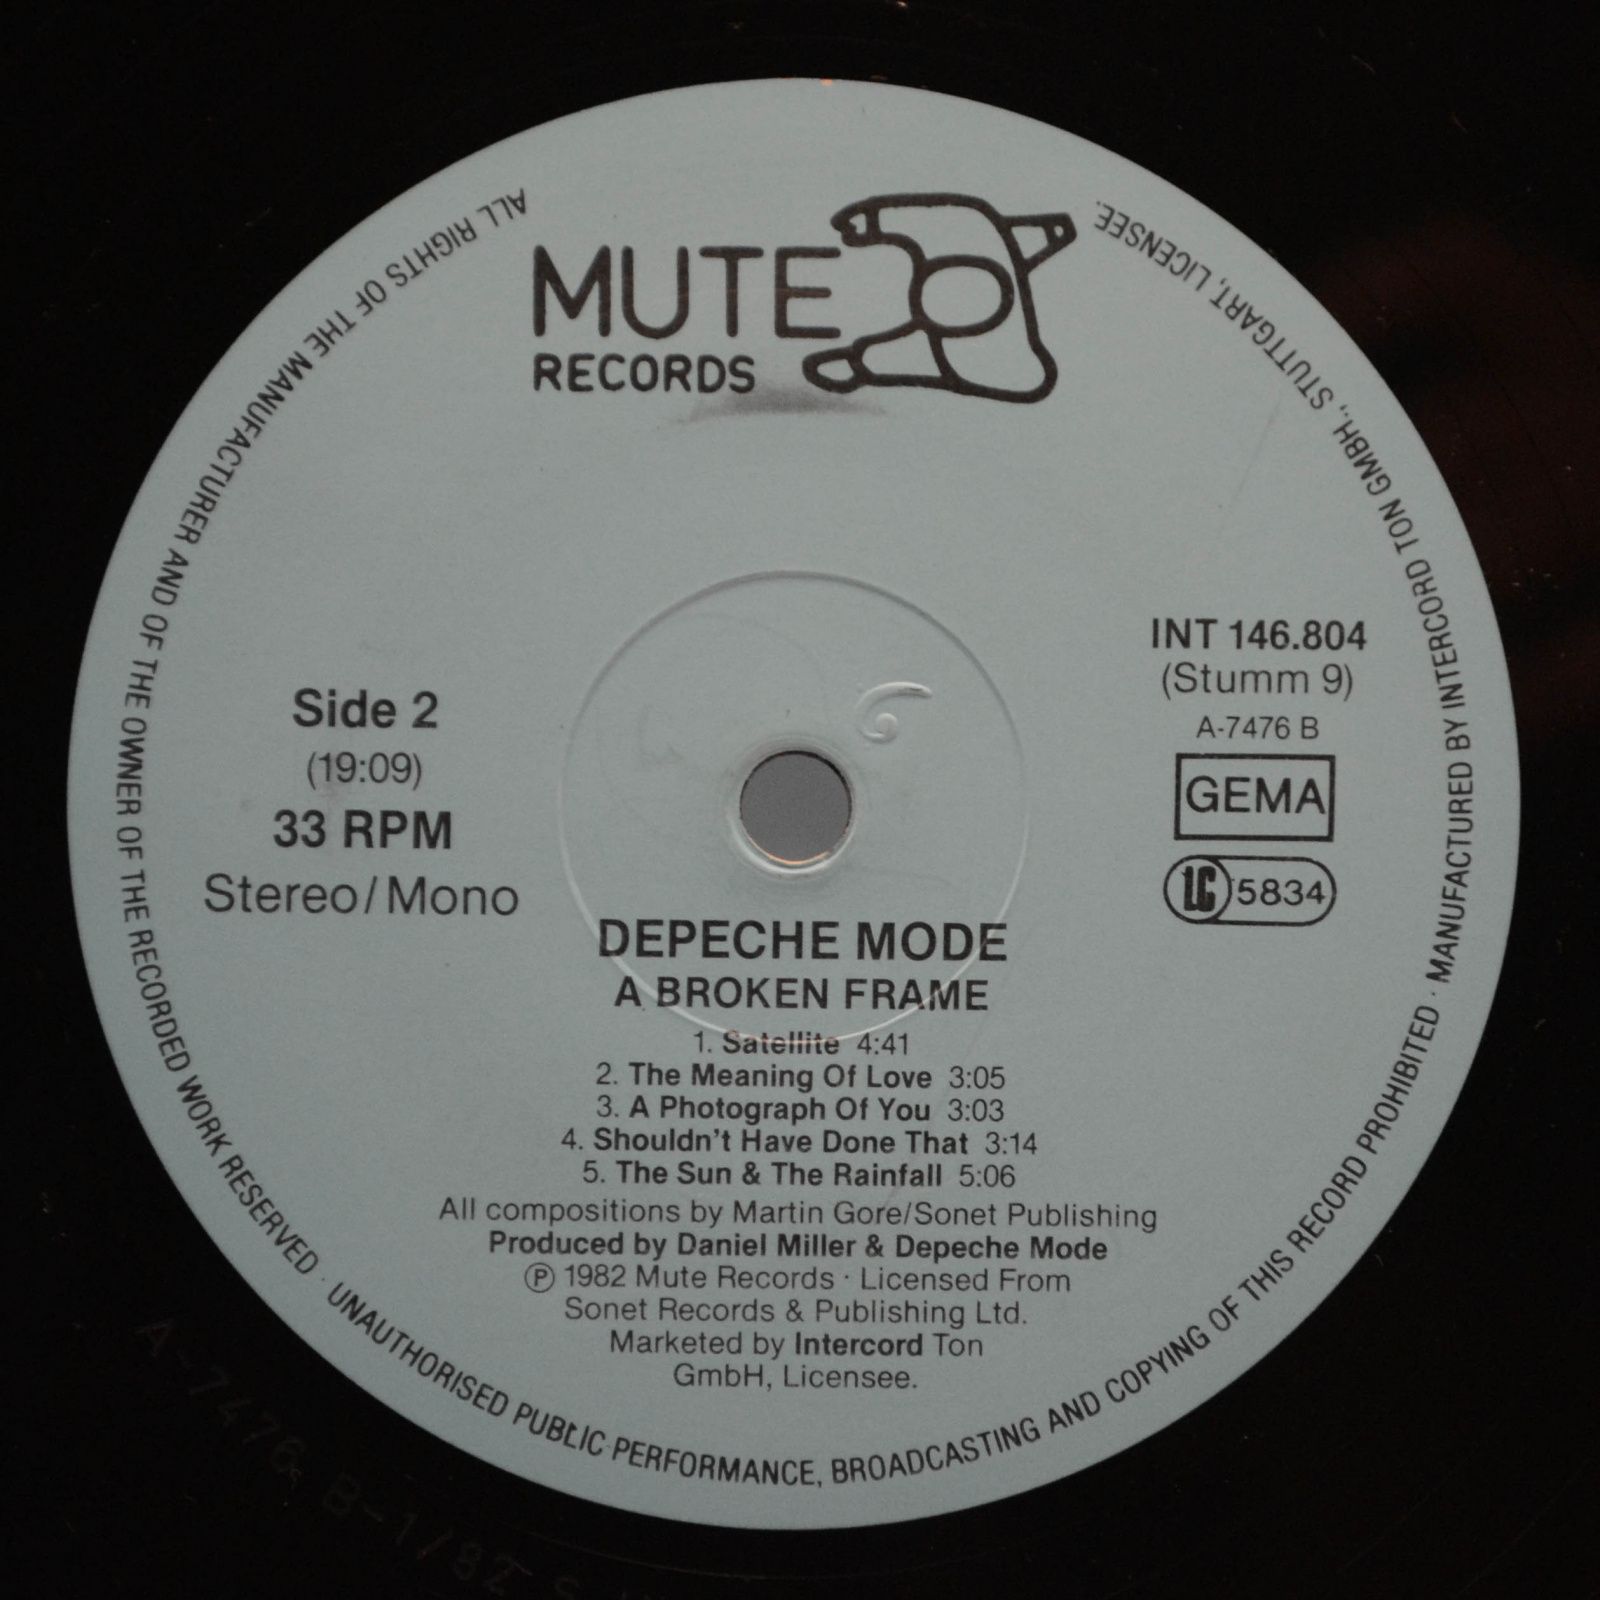 Depeche Mode — A Broken Frame, 1982